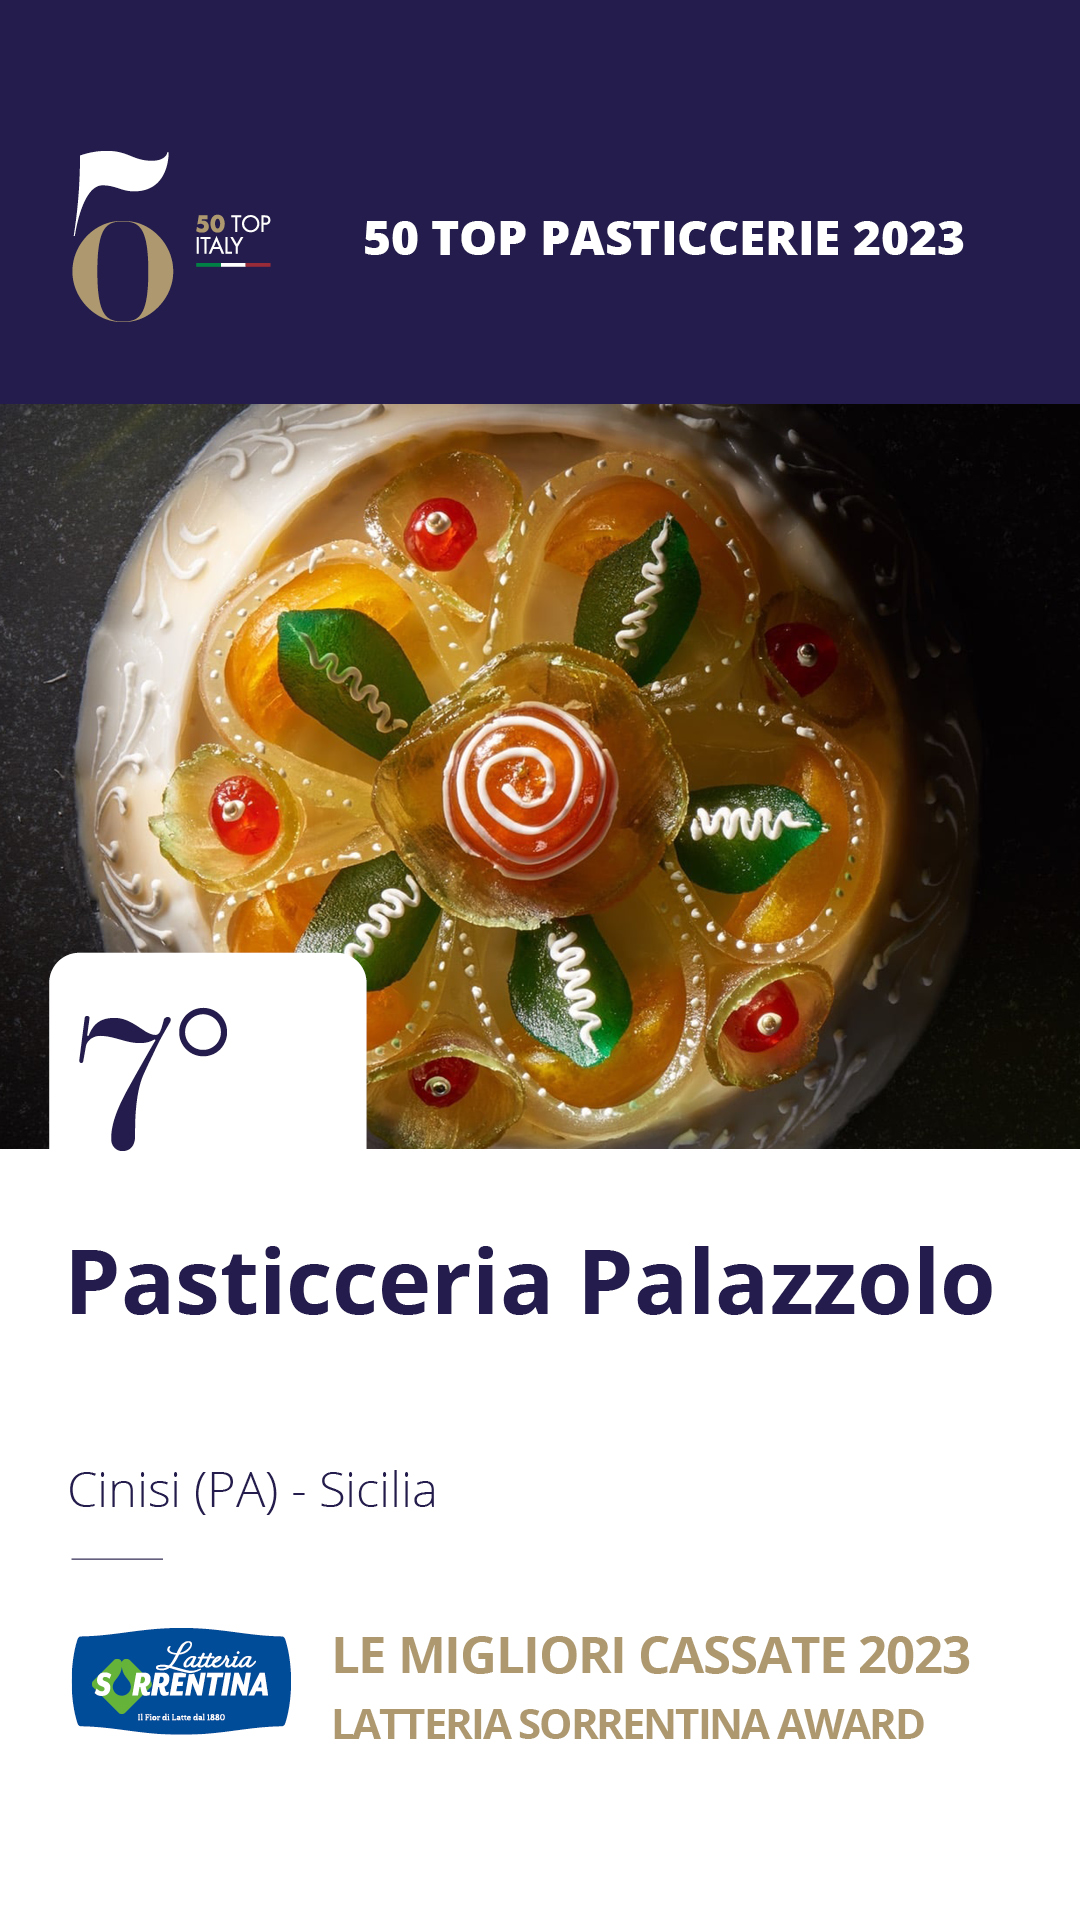 7 - Pasticceria Palazzolo - Cinisi (PA), Sicilia